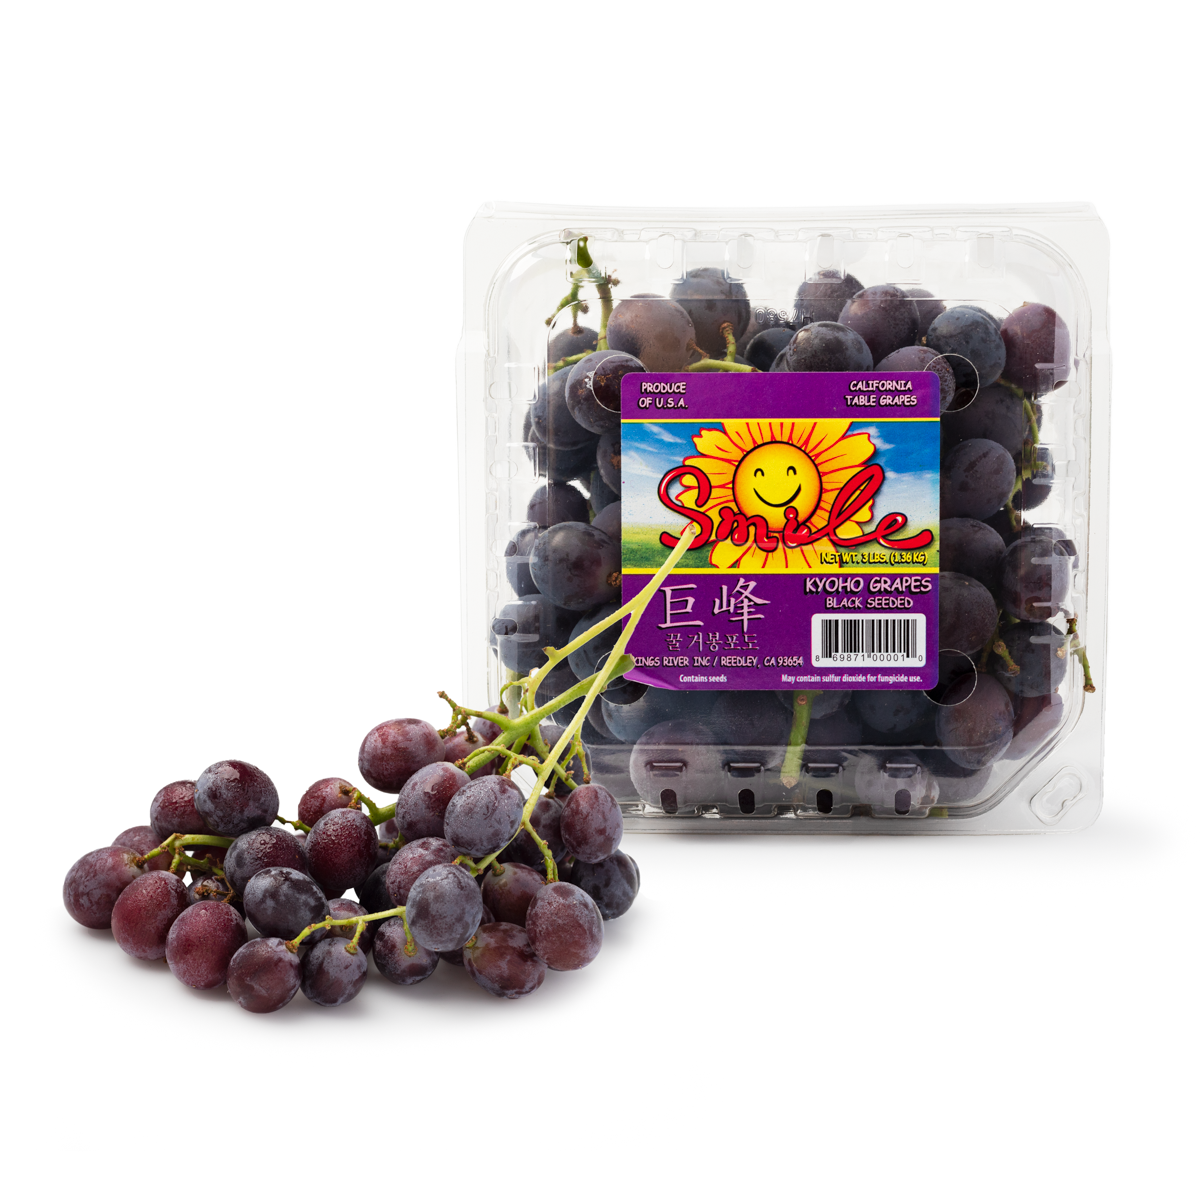 kyoho-grapes